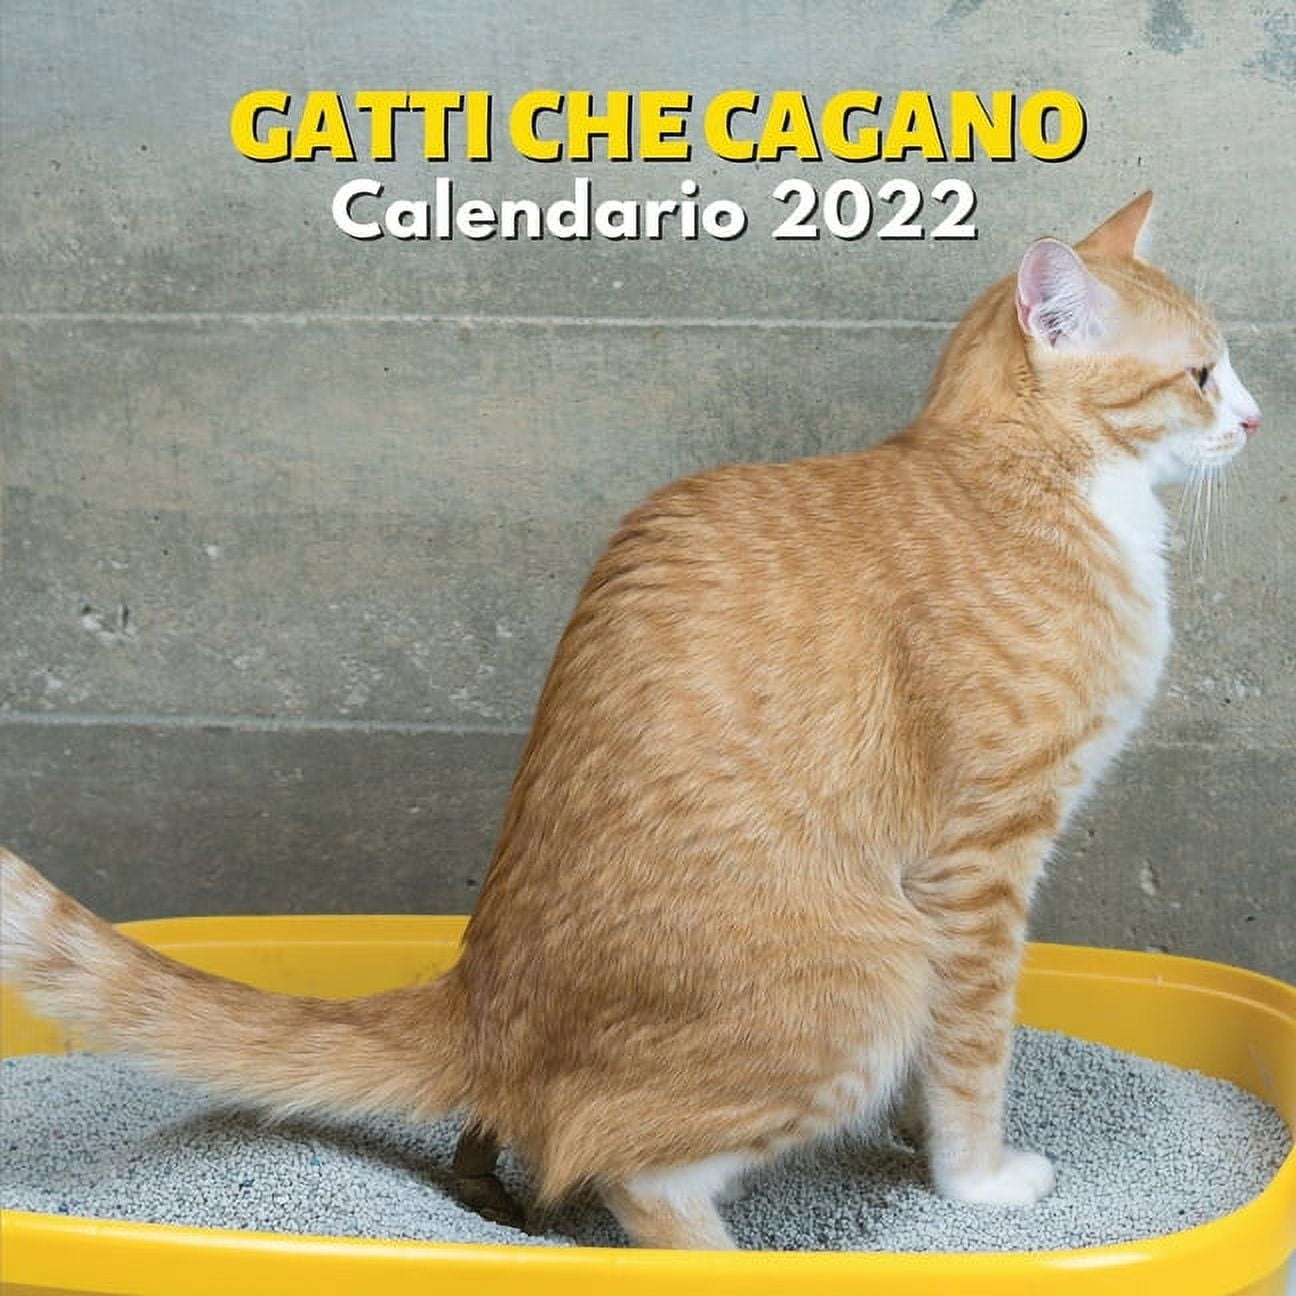 Gatti Che Cagano Calendario 2022 : amanti dei gatti - divertenti